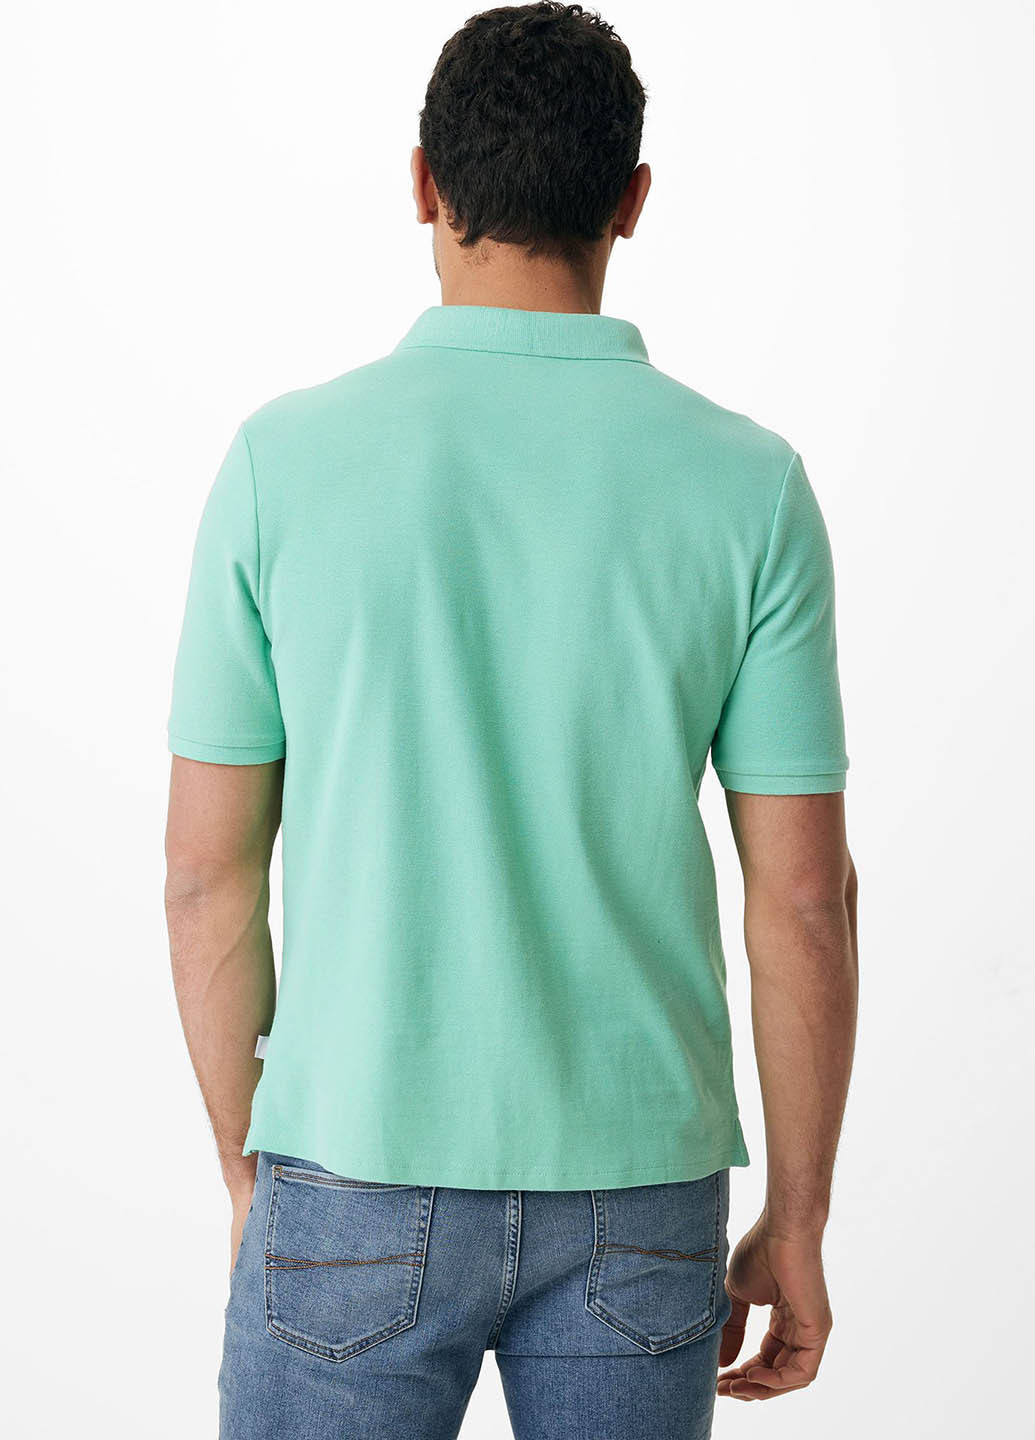 Бирюзовая футболка-поло для мужчин Mexx однотонная